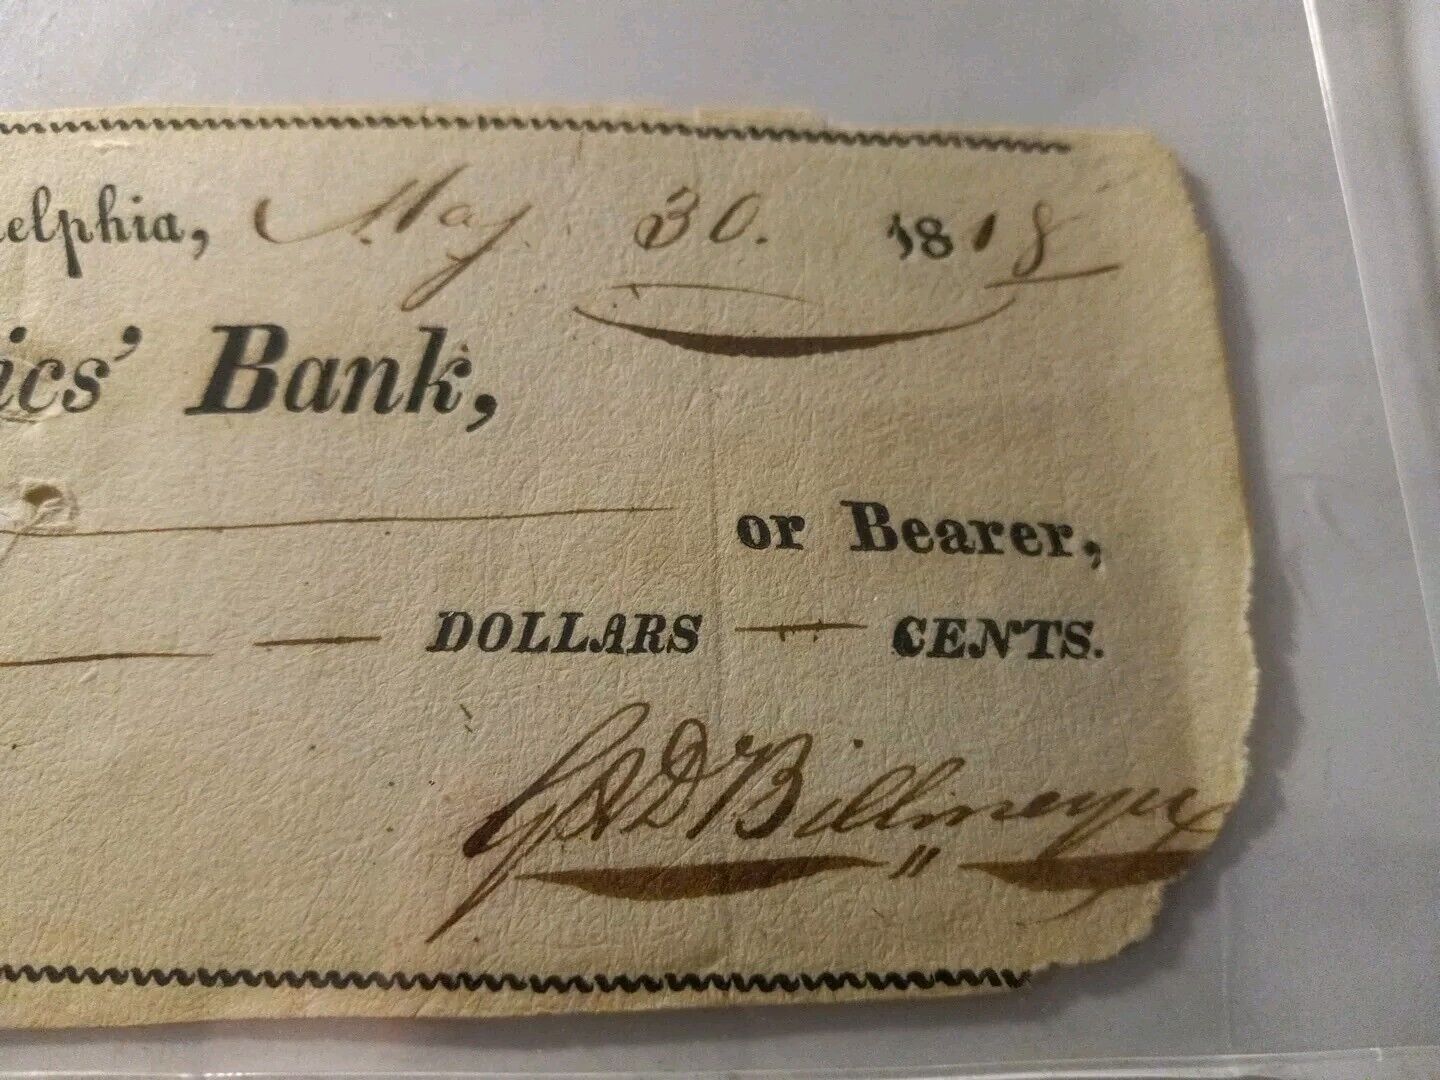 1818 Merchants and Mechanics Bank Check Philadelphia, Wheeling, Issued 1818